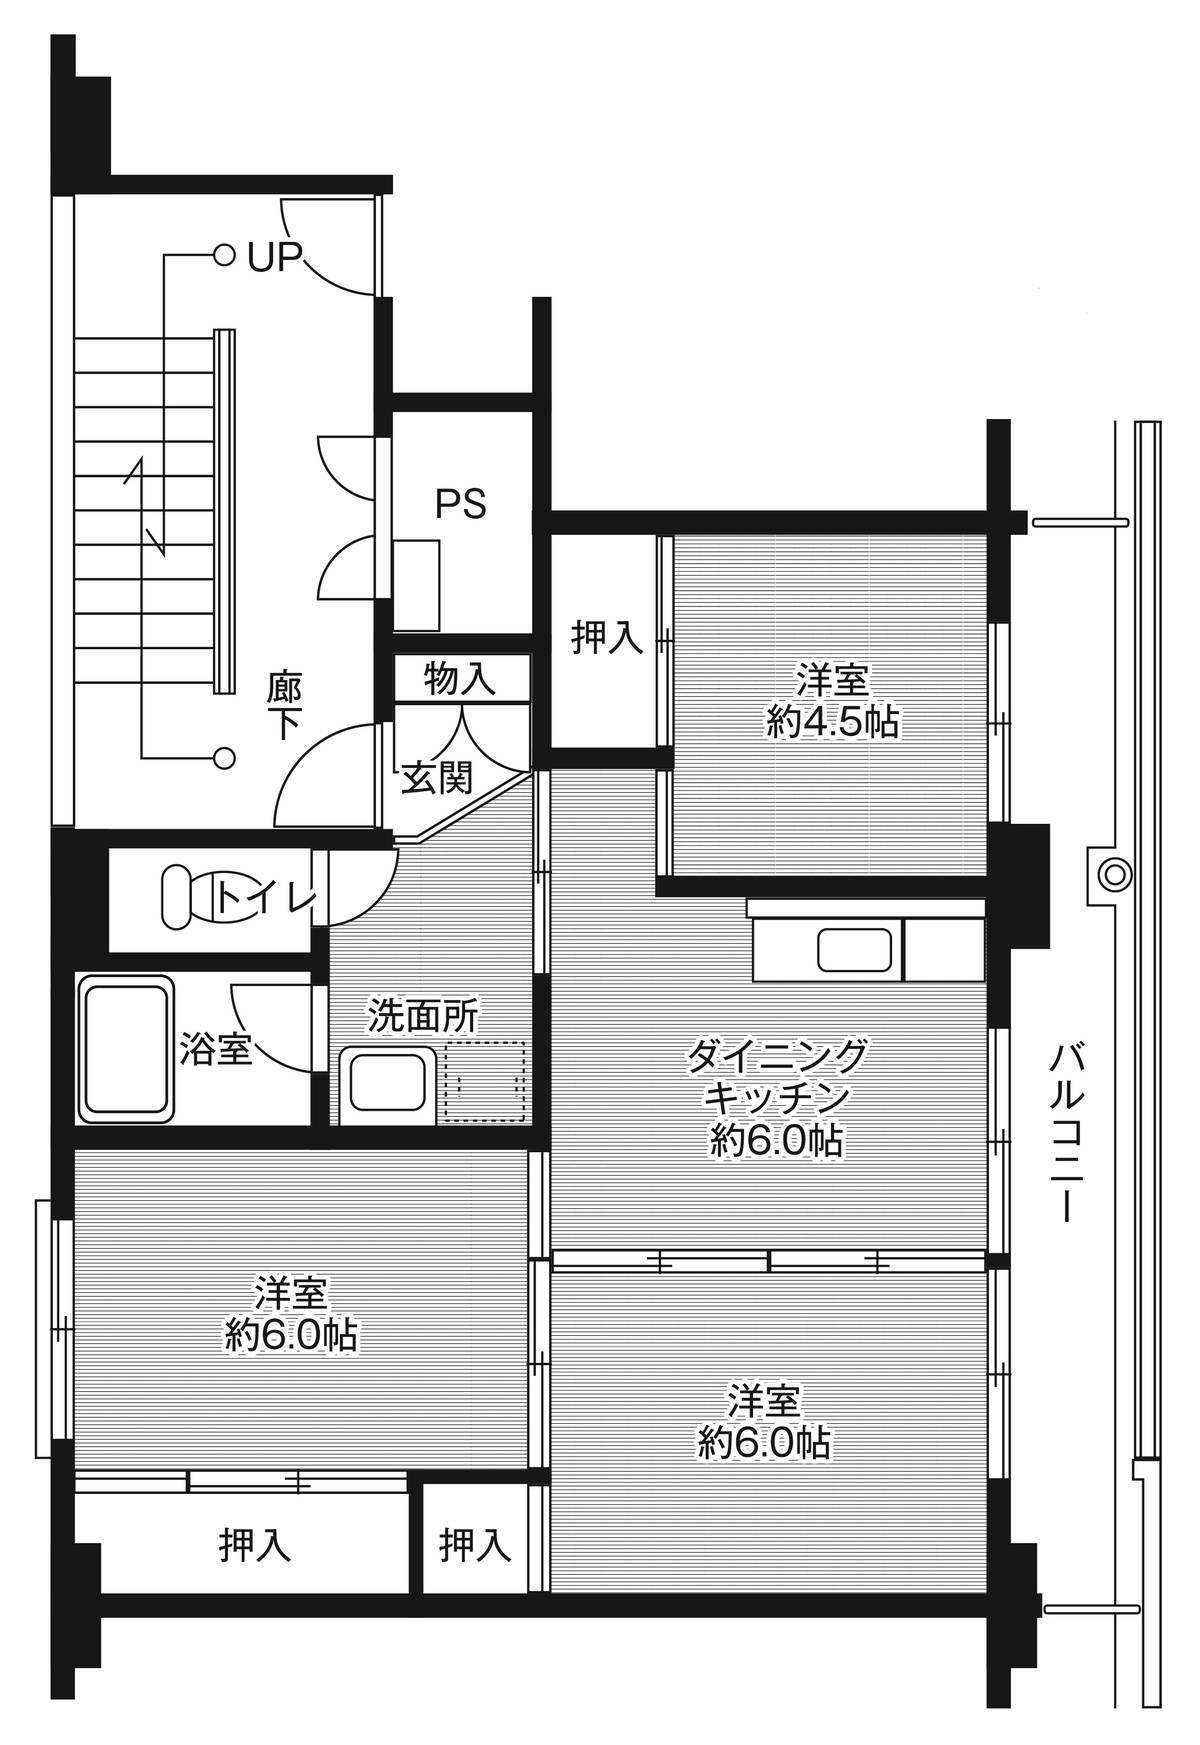 Sơ đồ phòng 3DK của Village House Kamitsuma ở Shimotsuma-shi